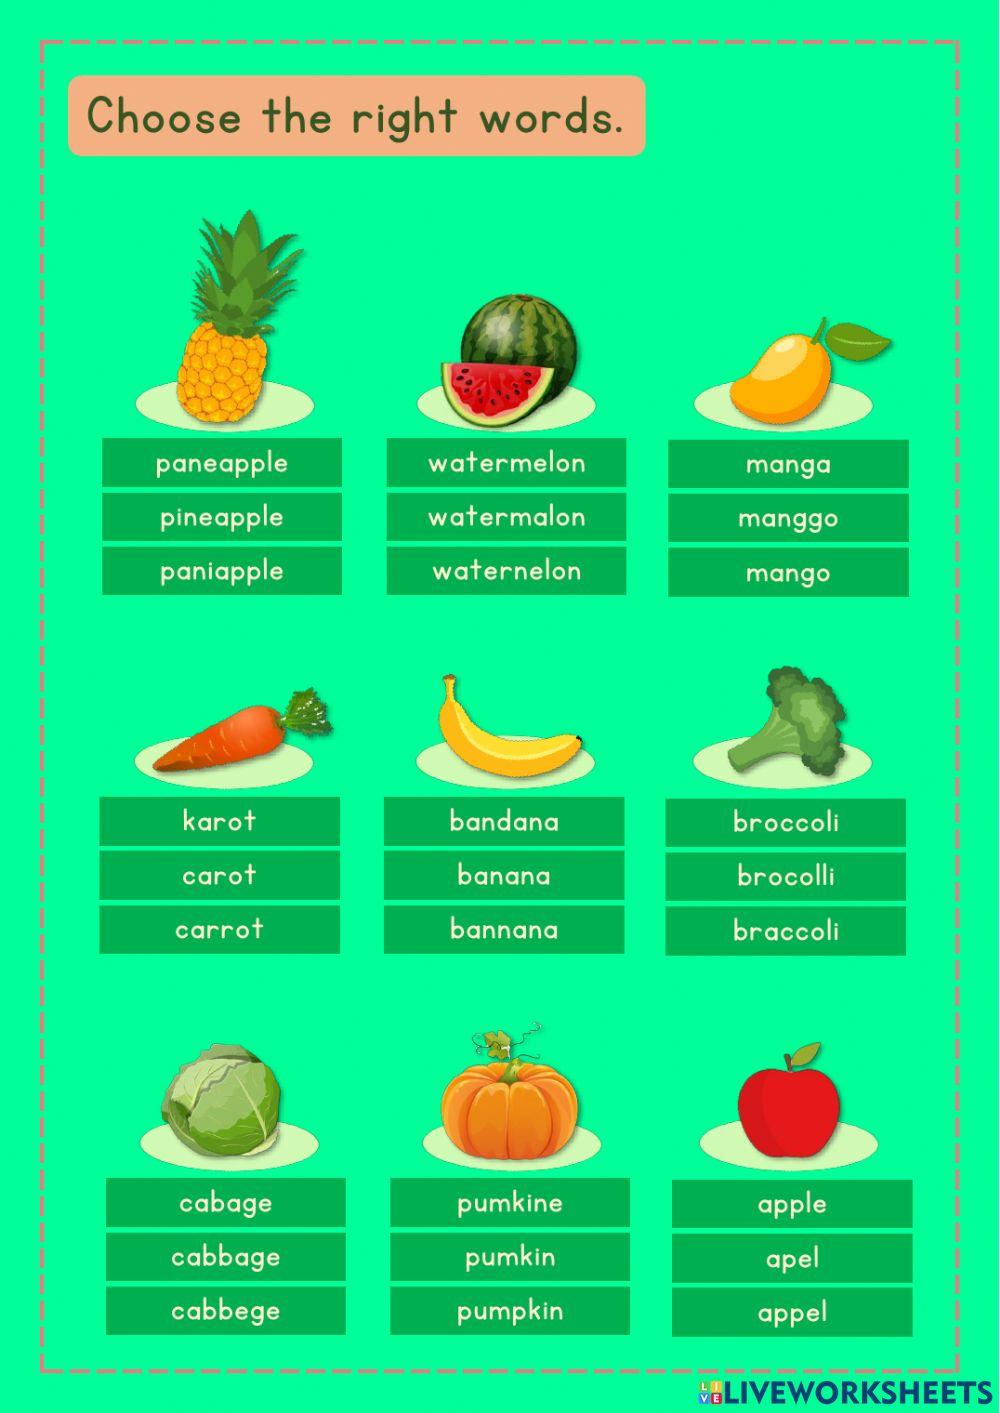 Fruits & vegetables